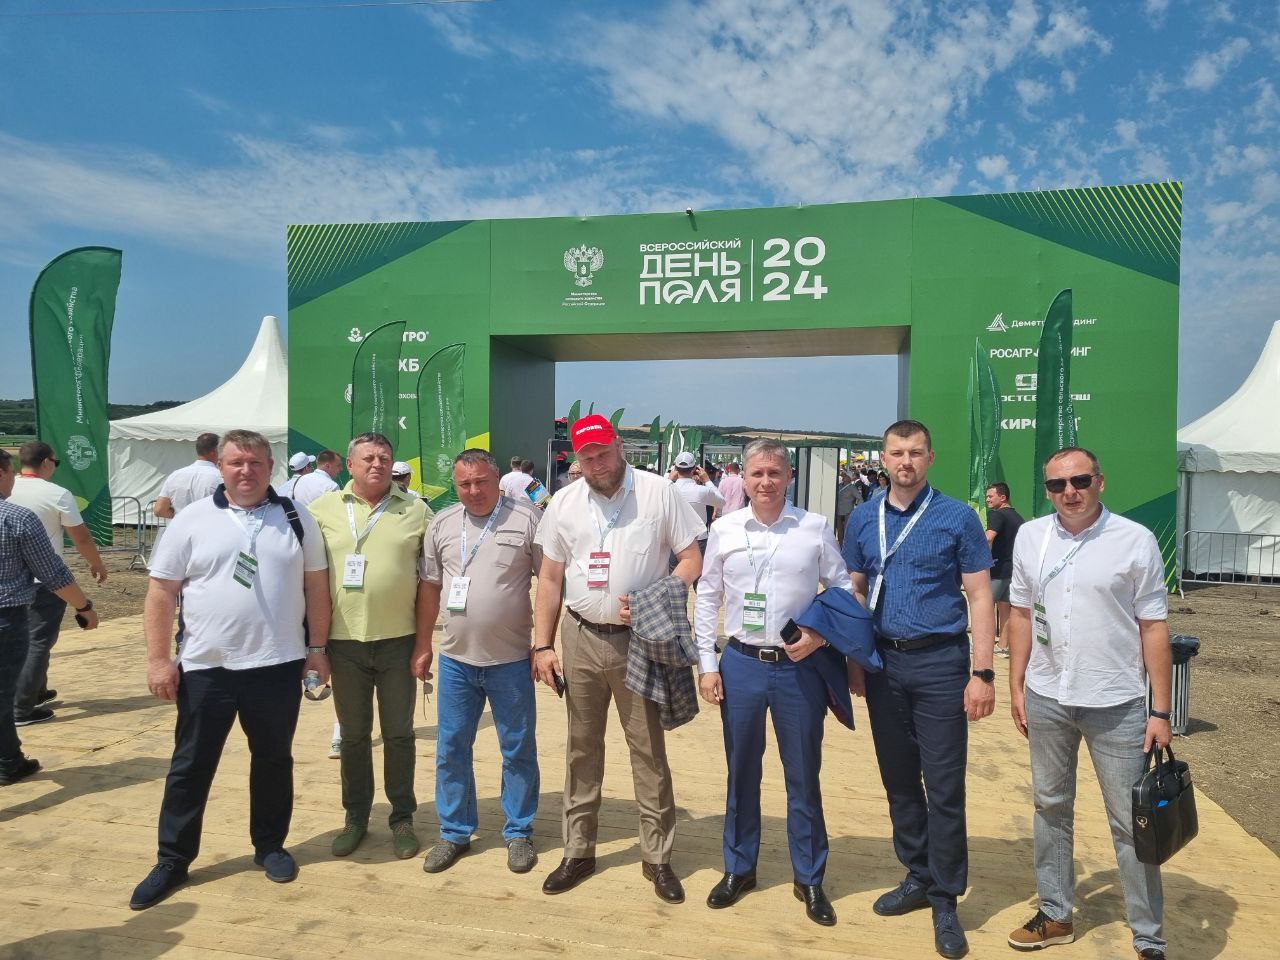 Сотрудники комитета по развитию агропромышленного комплекса посетили выставку под открытым небом «Всероссийский день поля – 2024».